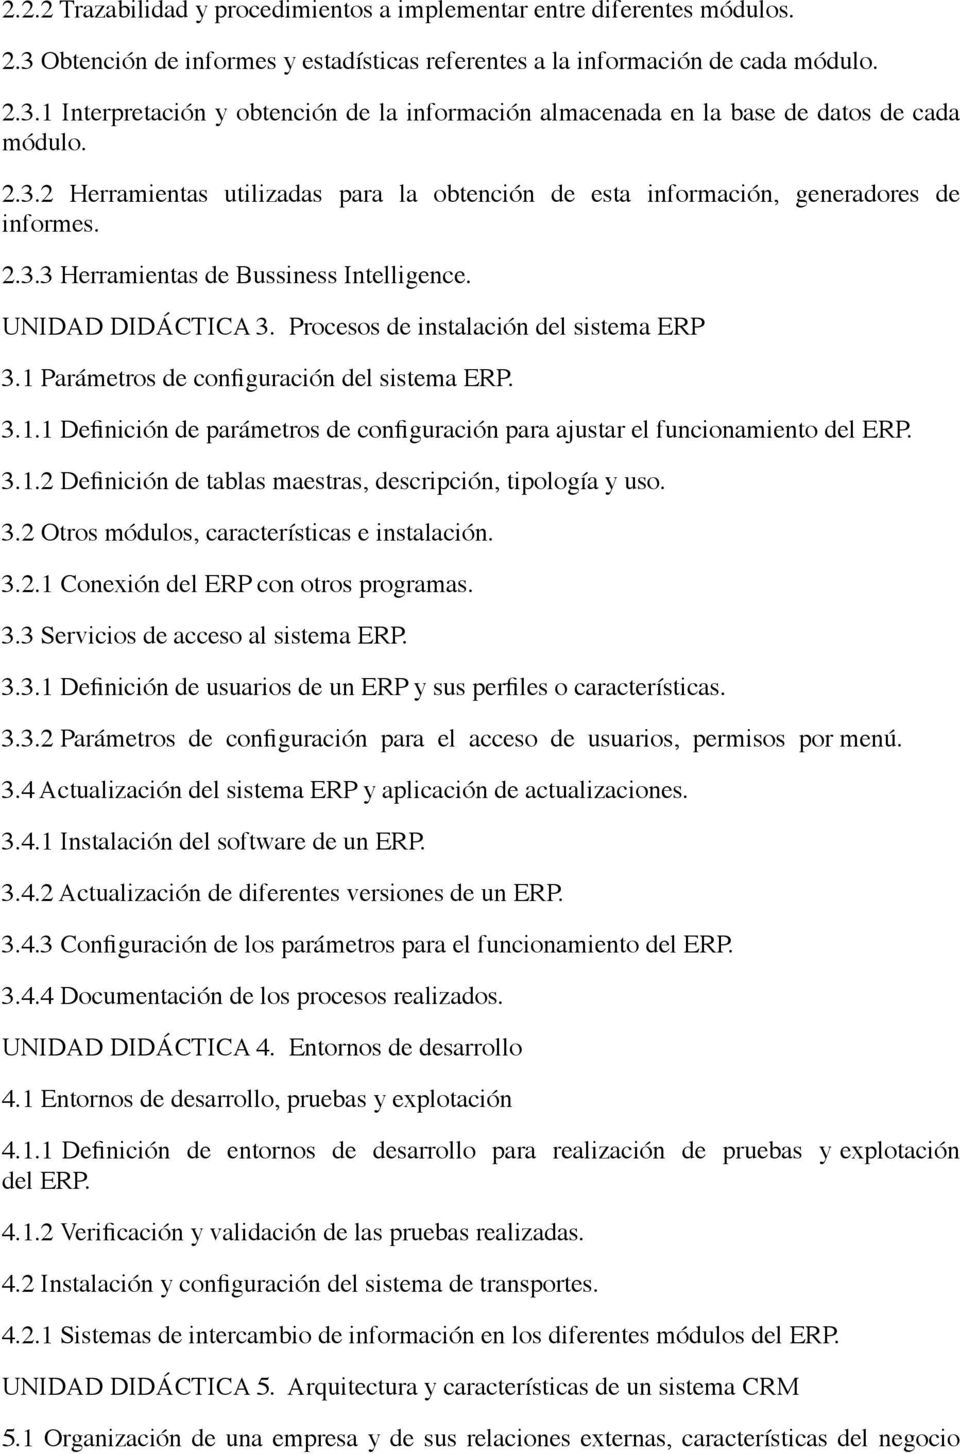 Procesos de instalación del sistema ERP 3.1 Parámetros de configuración del sistema ERP. 3.1.1 Definición de parámetros de configuración para ajustar el funcionamiento del ERP. 3.1.2 Definición de tablas maestras, descripción, tipología y uso.